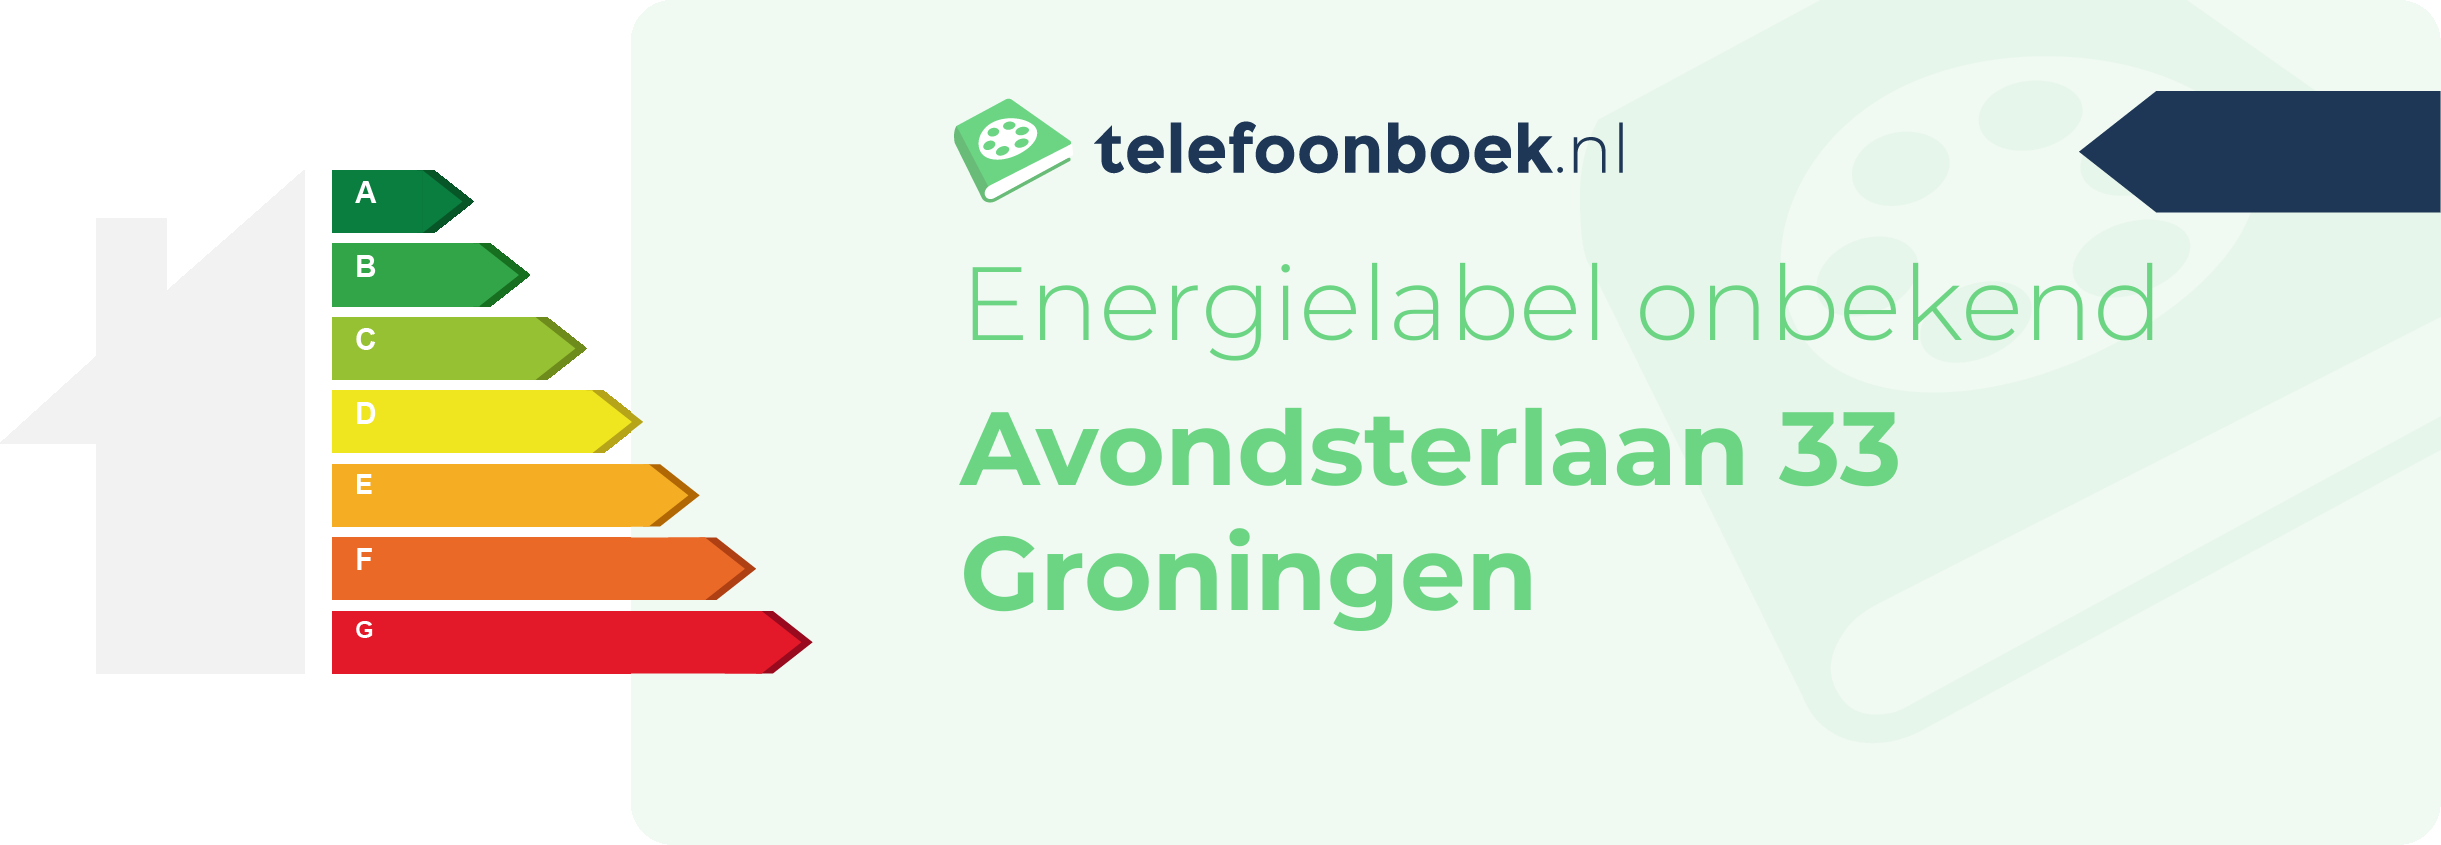 Energielabel Avondsterlaan 33 Groningen